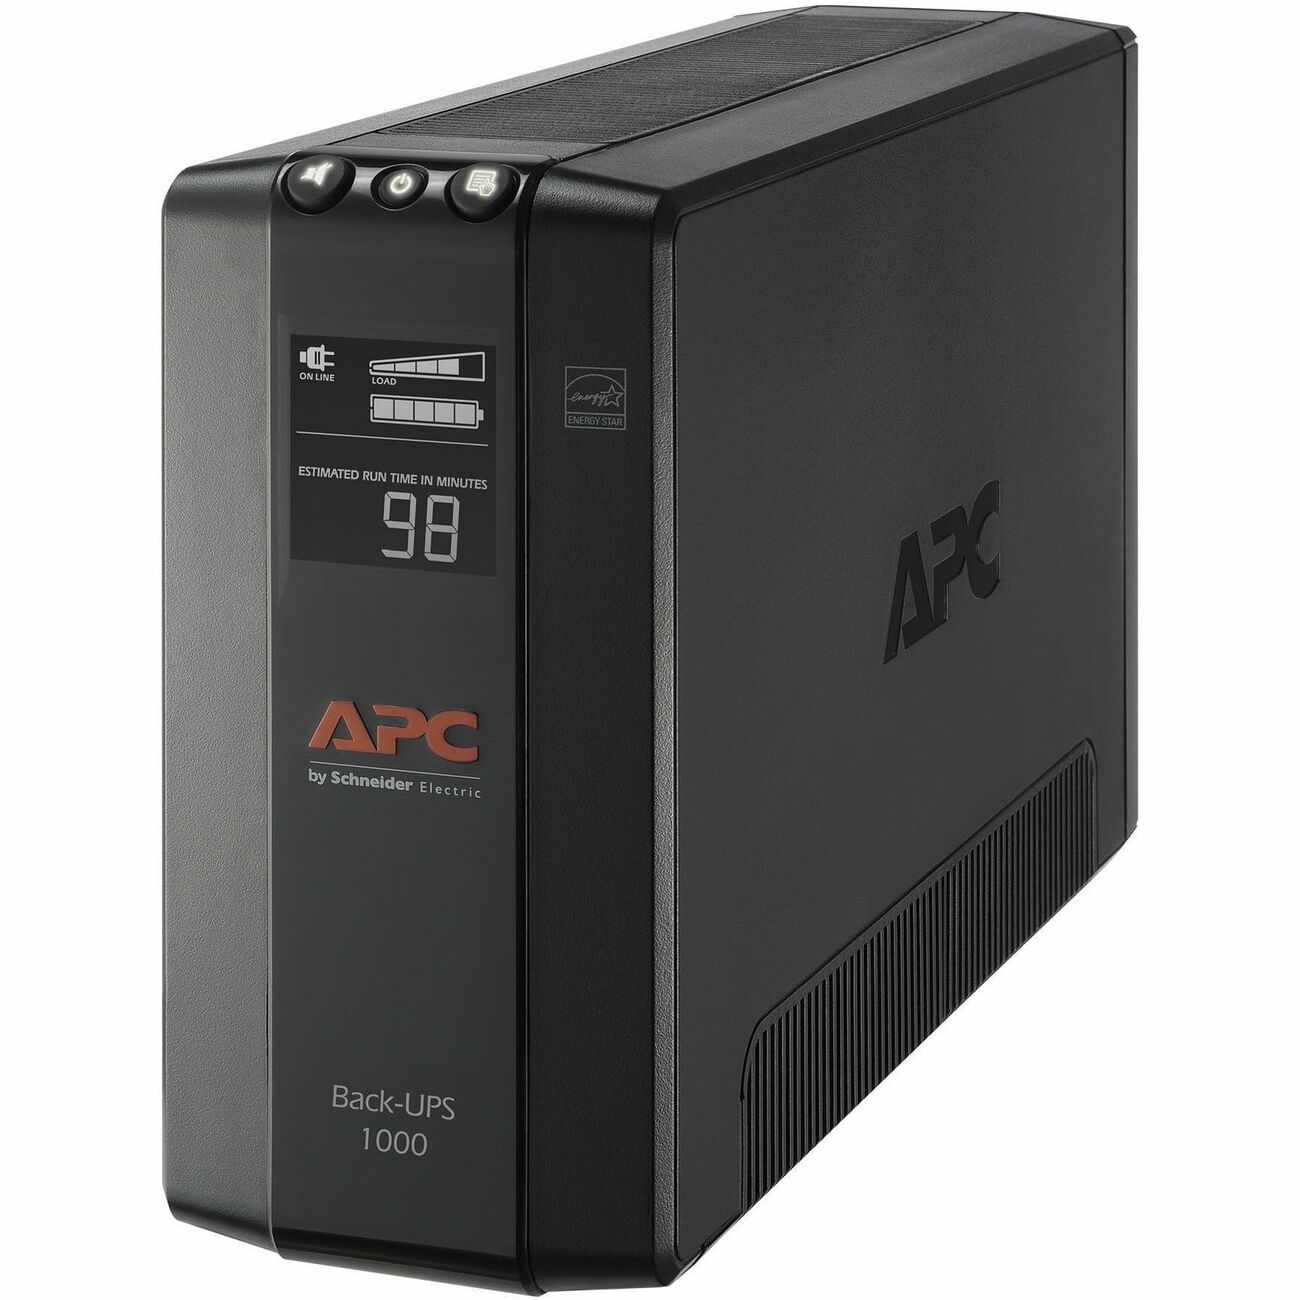 APC Back-UPS Pro BR1000G-IN, 1000VA / 600W, 230V UPS System, High